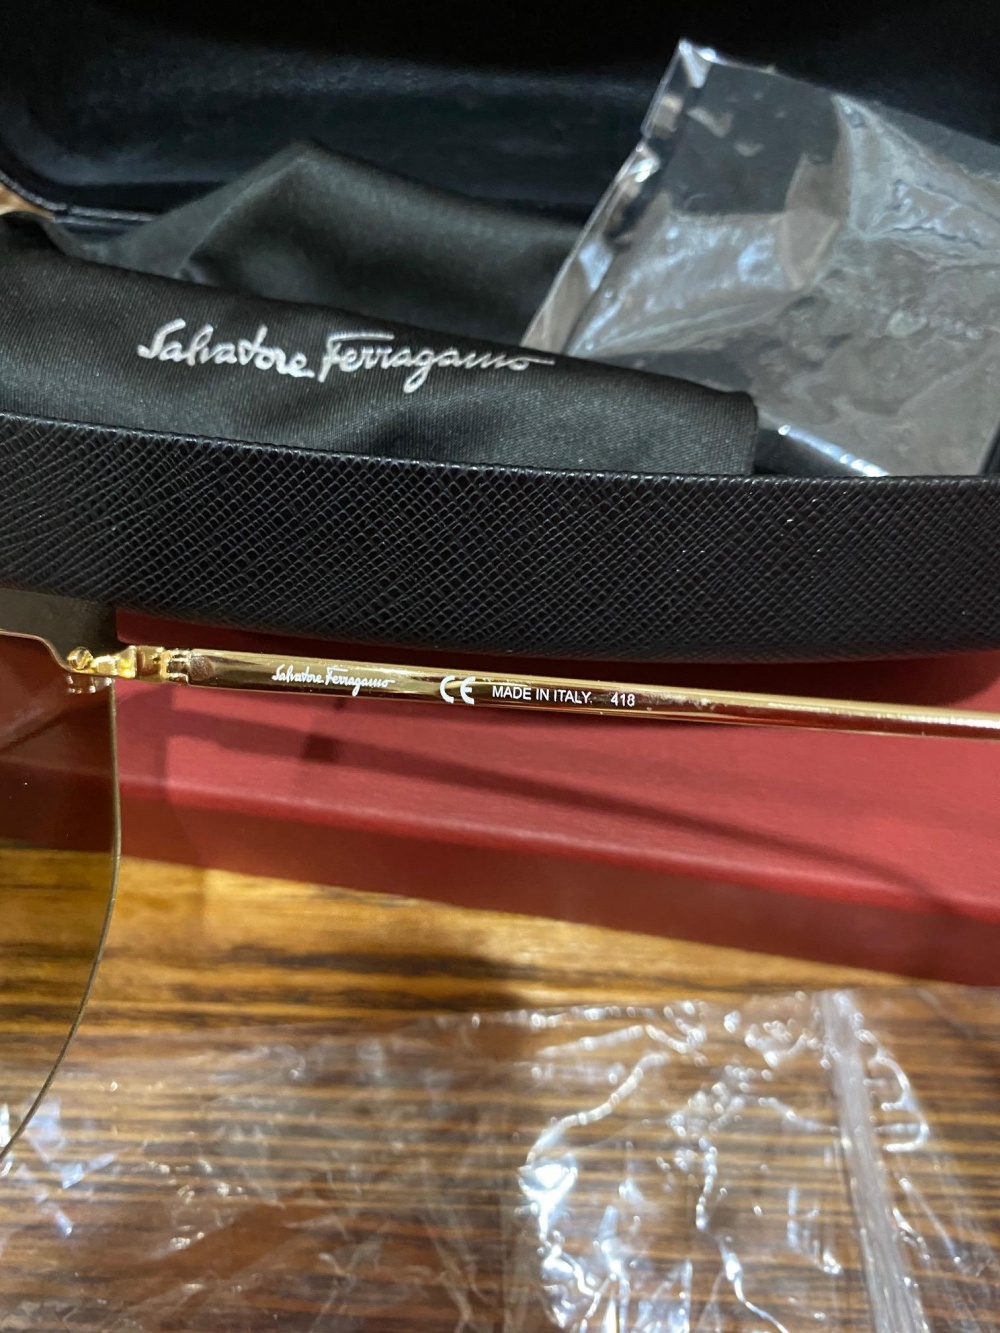 Солнцезащитные новые очки Salvatore Ferragamo